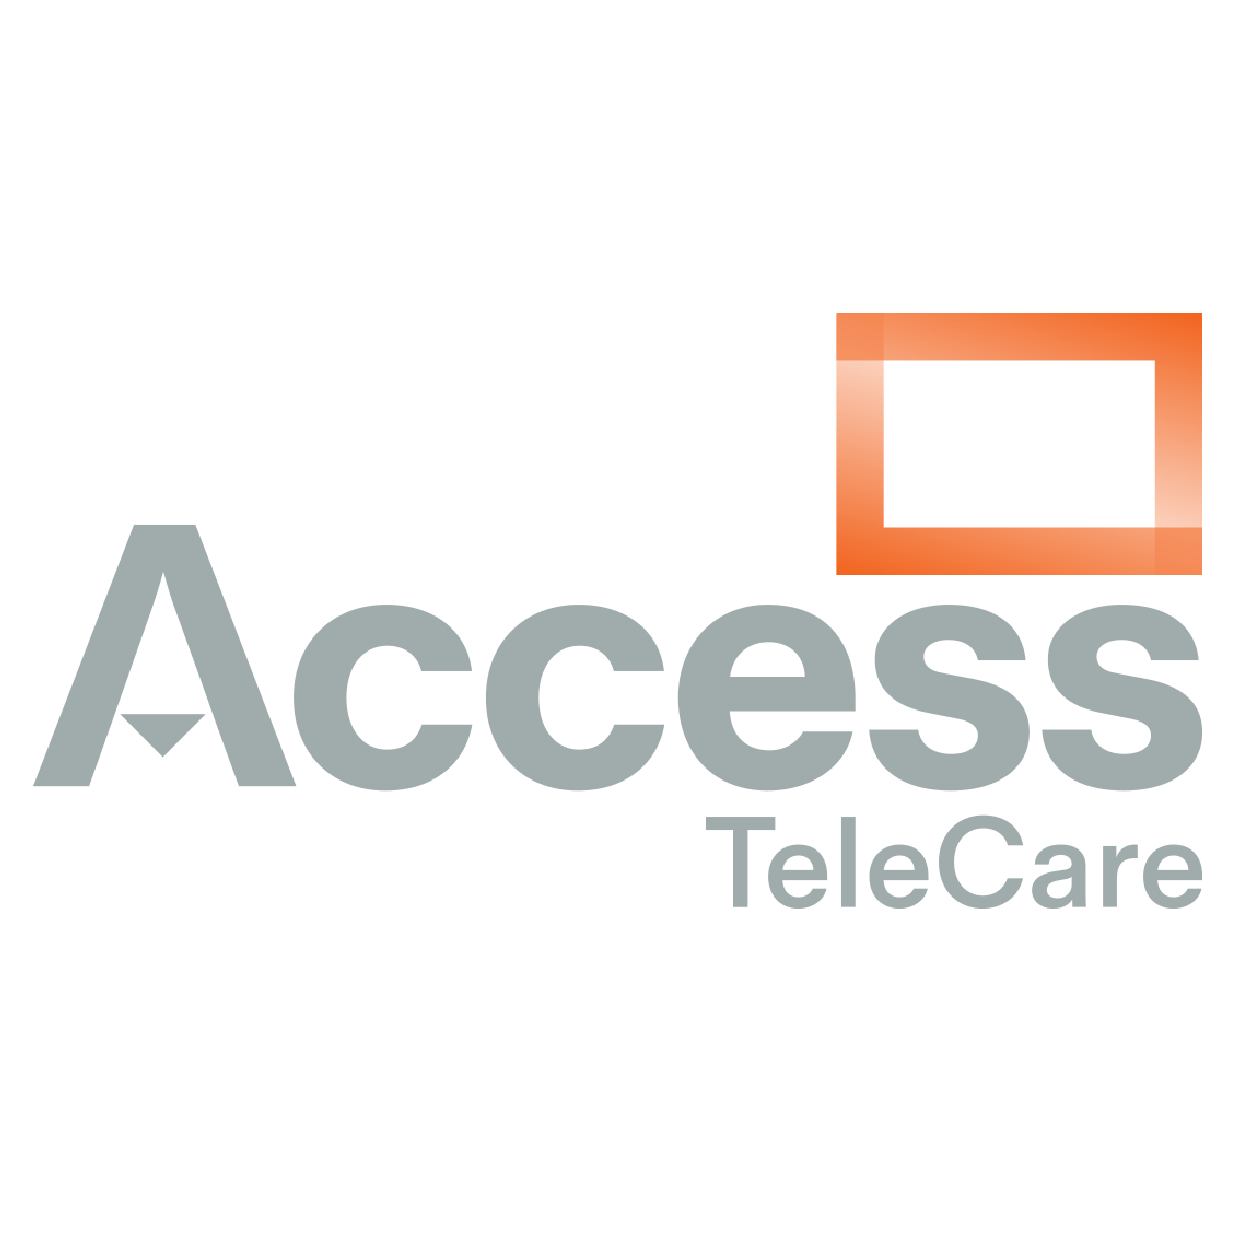 AccessTelecare